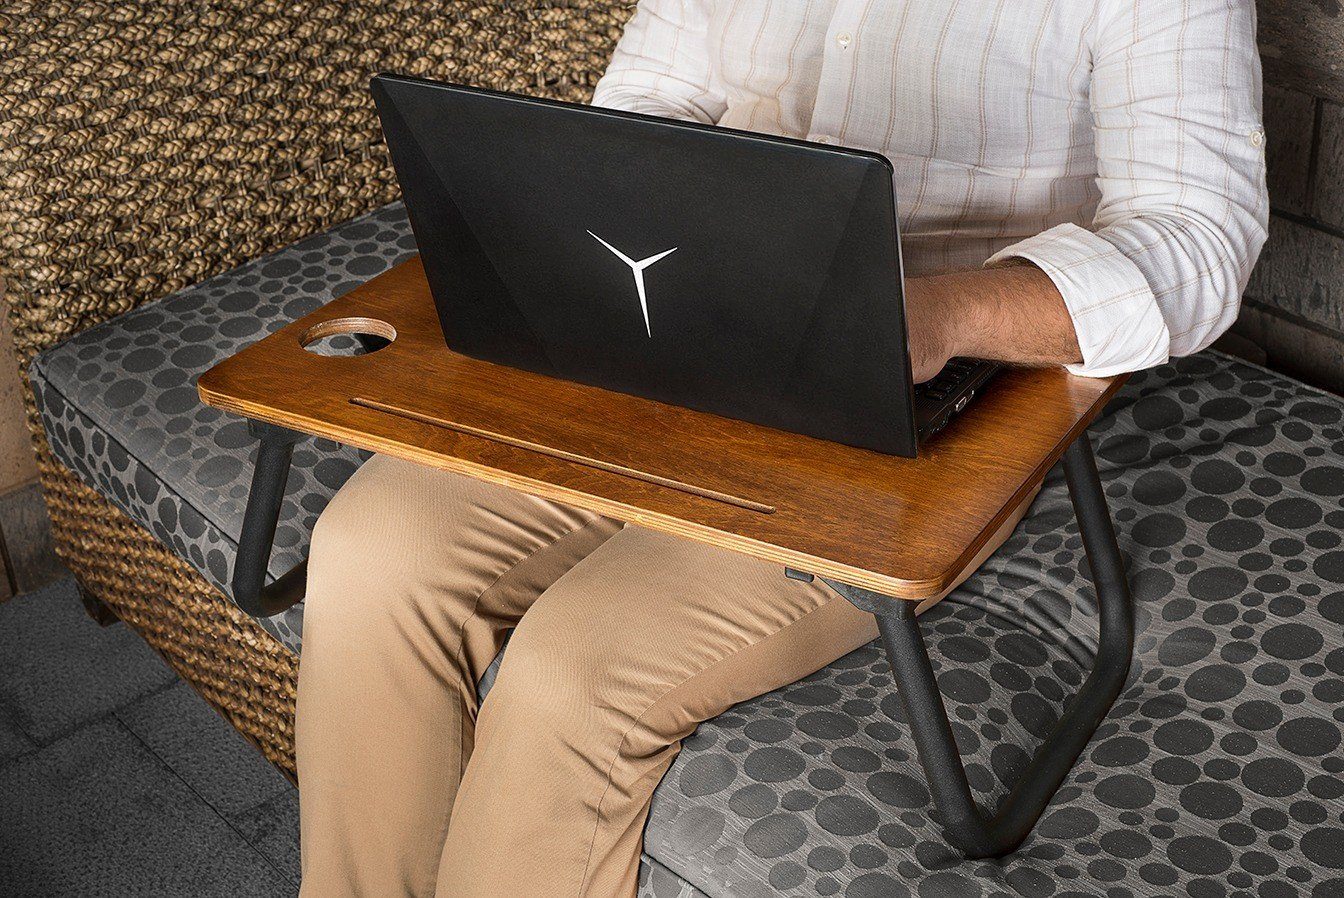 Skye Decor Couchtisch Laptop SehpaVLV,Schwarz, 45x60x20 cm, 100% Birkenbaum